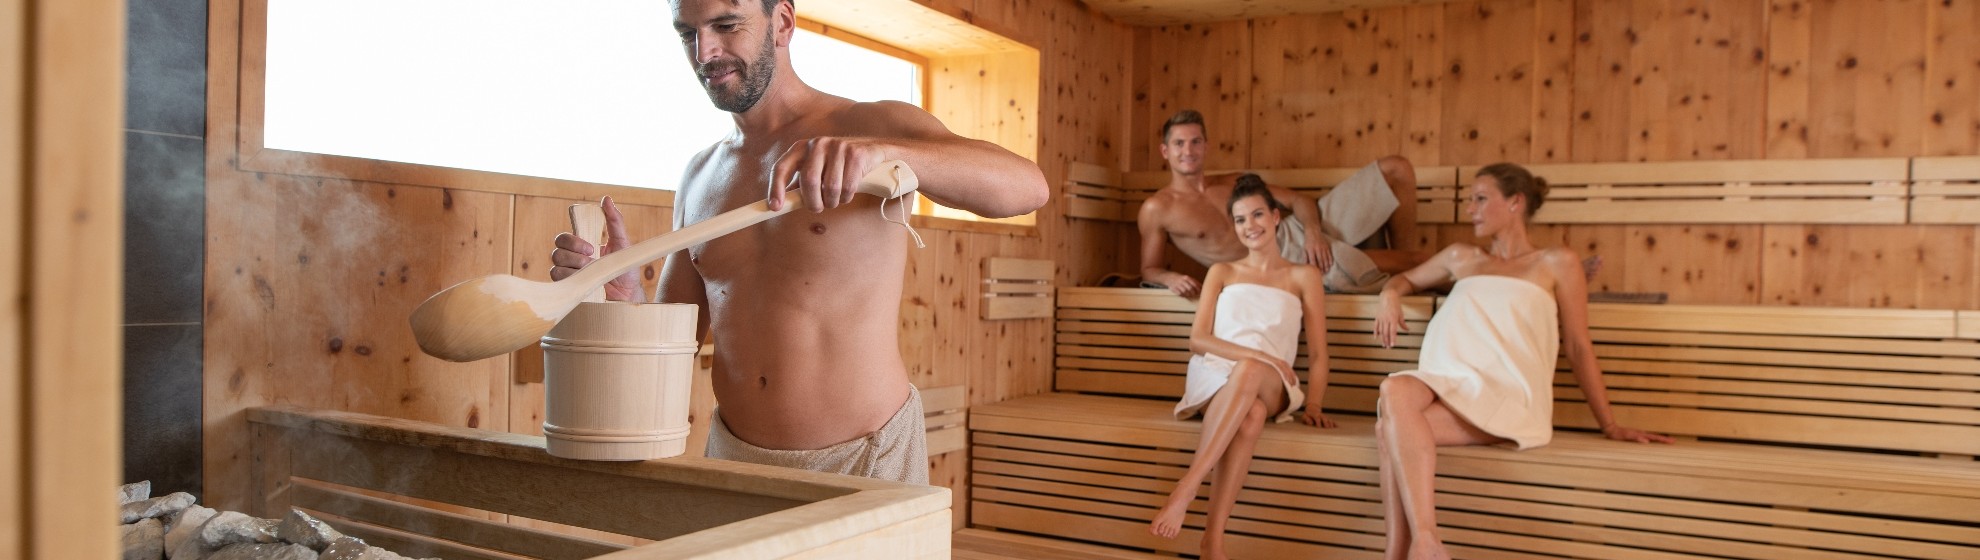 Bild von Sauna, in der gerade ein Aufguss von einem Mann gemacht wird. Im Hintergrund sitzen zwei Frauen und ein Mann.